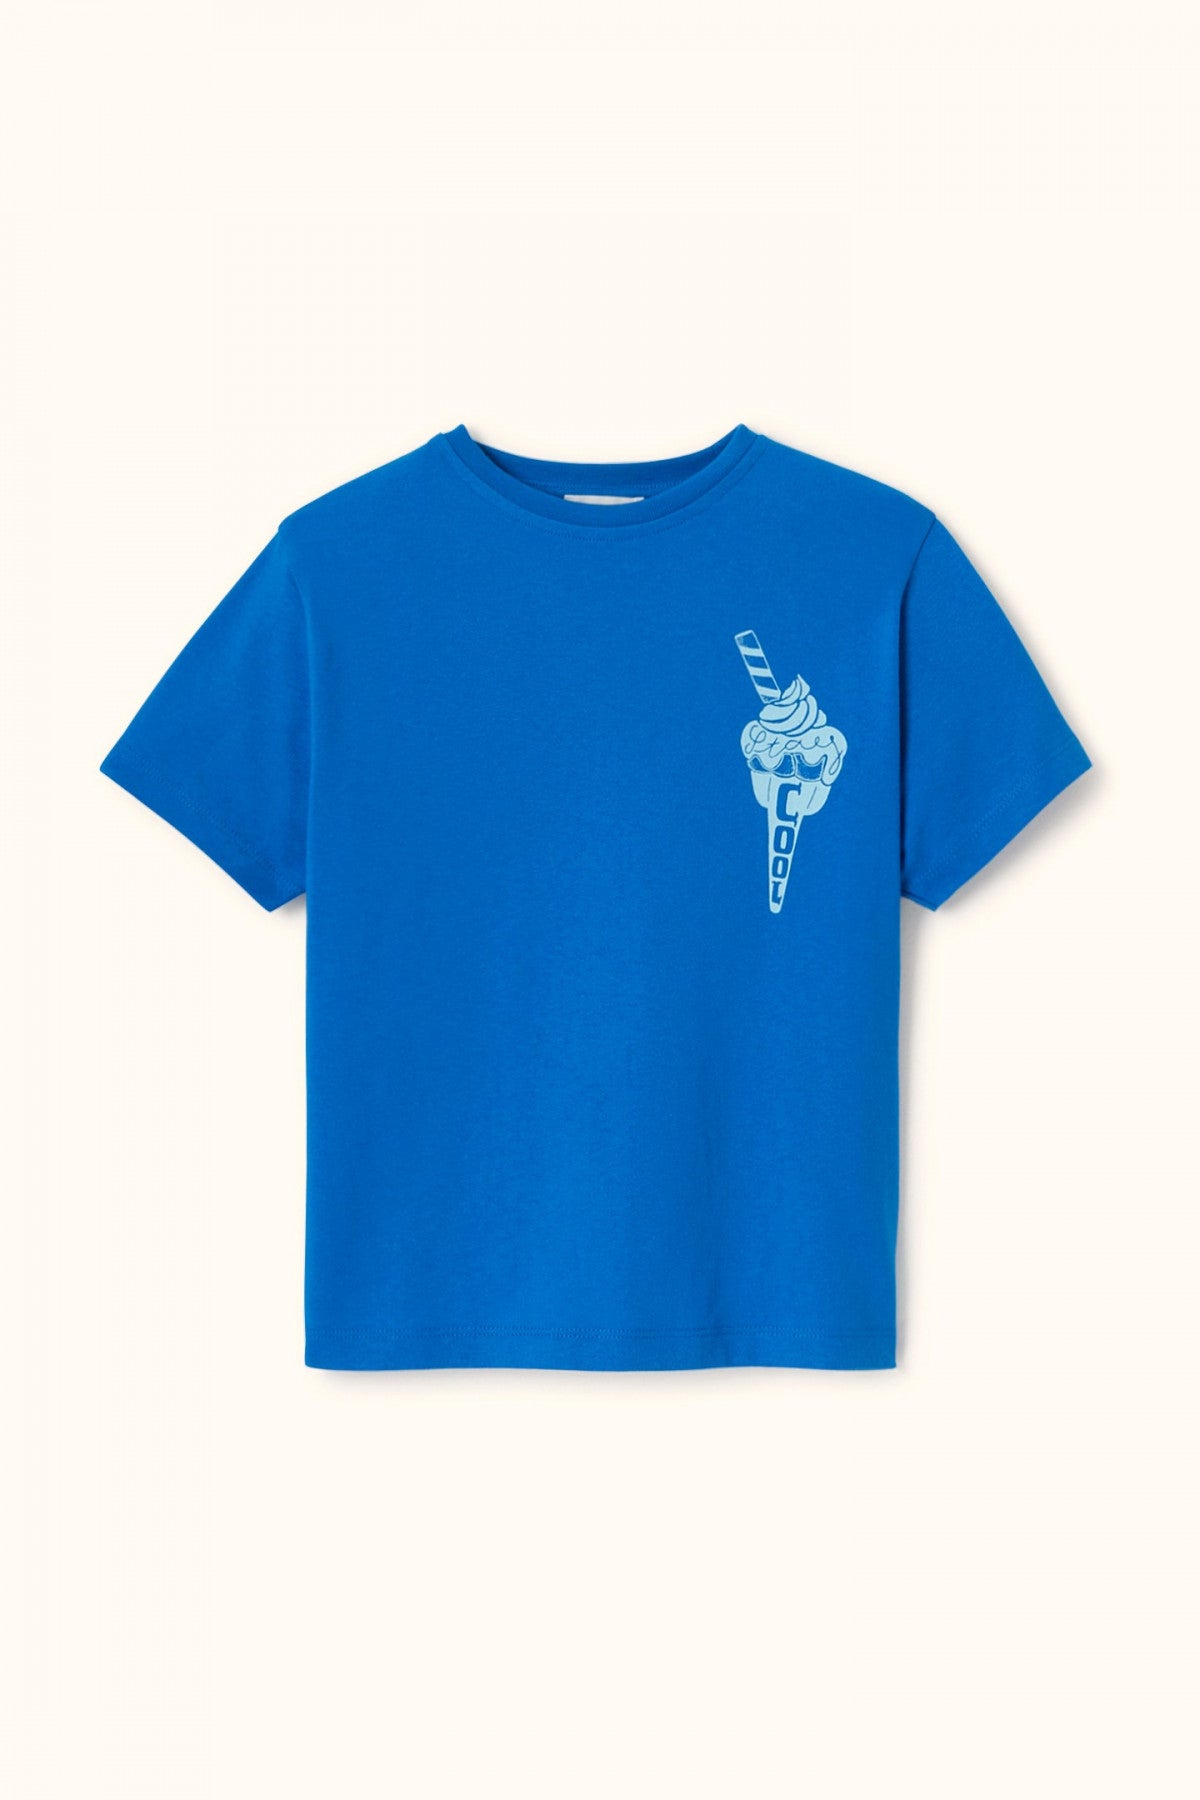 T-shirt bébé/enfant "Karu/Glace - Bleu Klein" - Apaches Collections